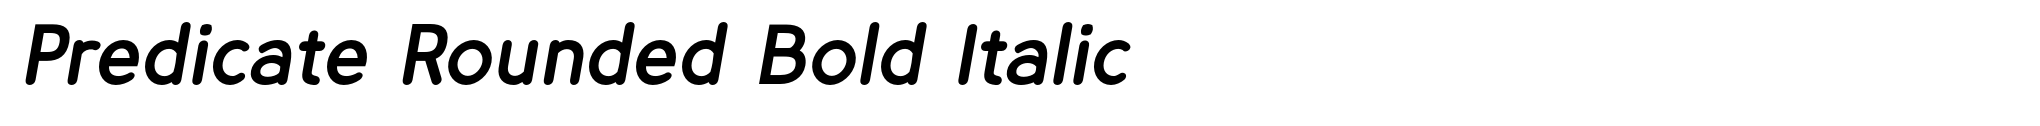 Predicate Rounded Bold Italic image